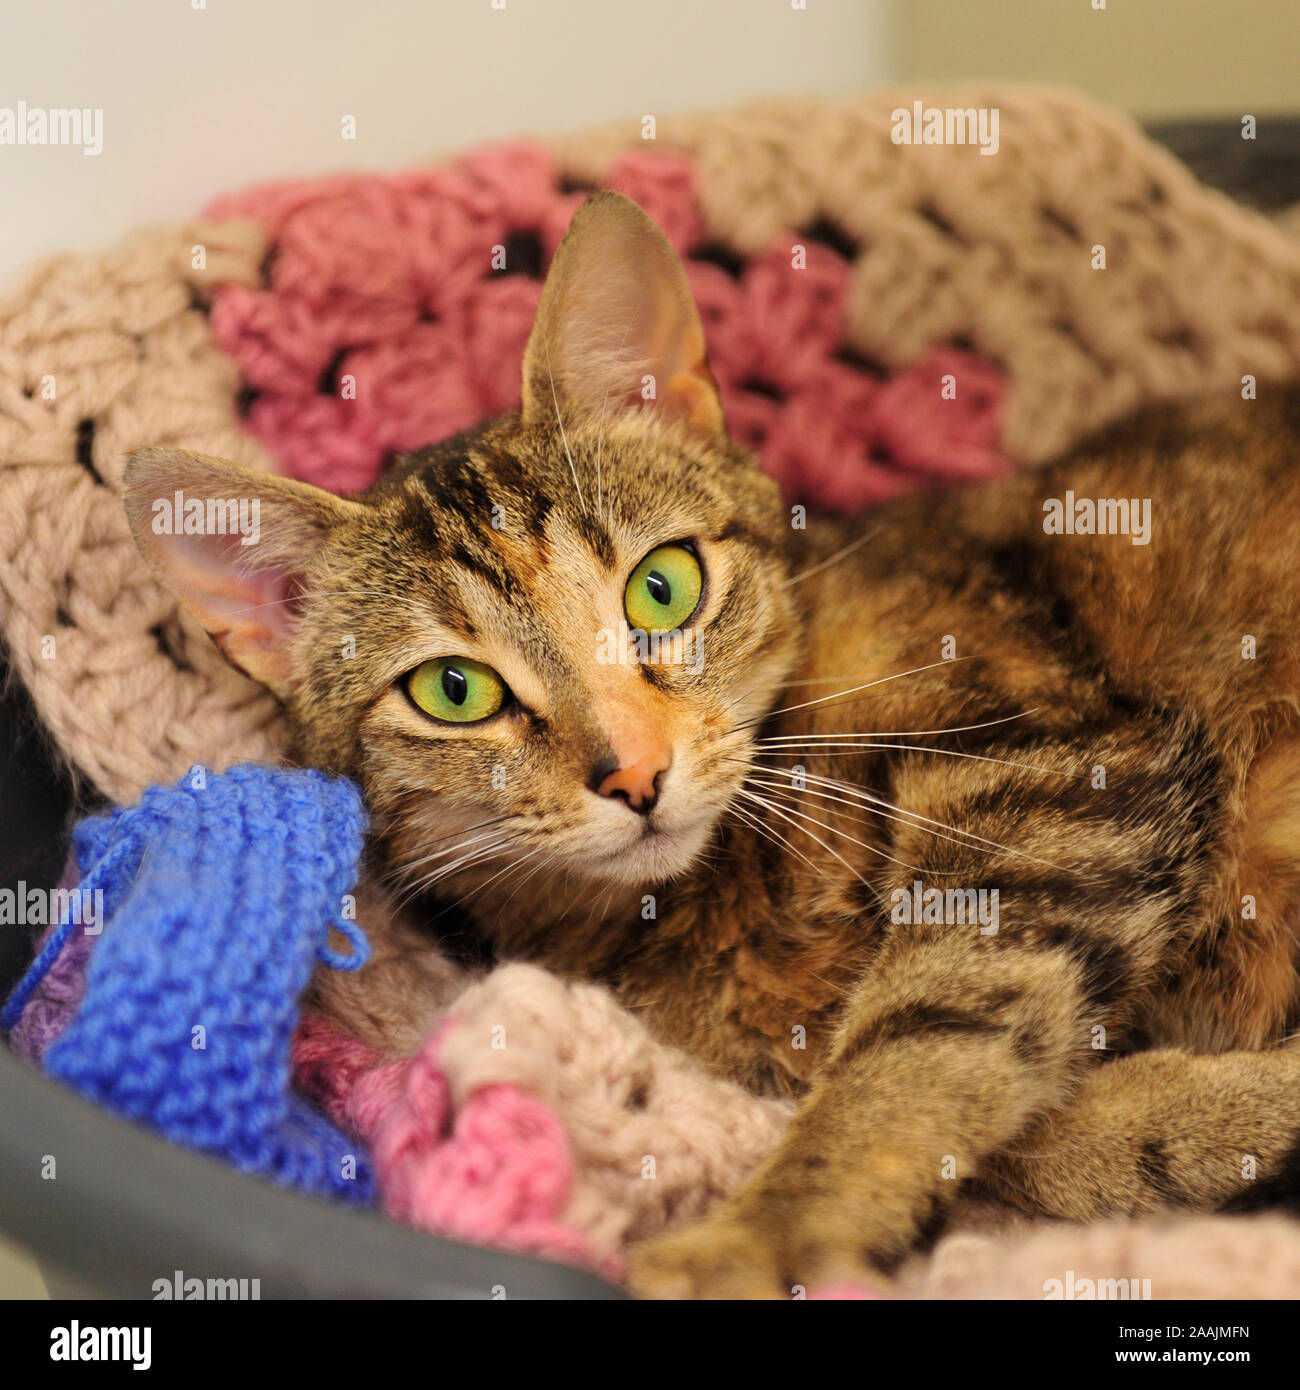 cat in blanket Stock Photo